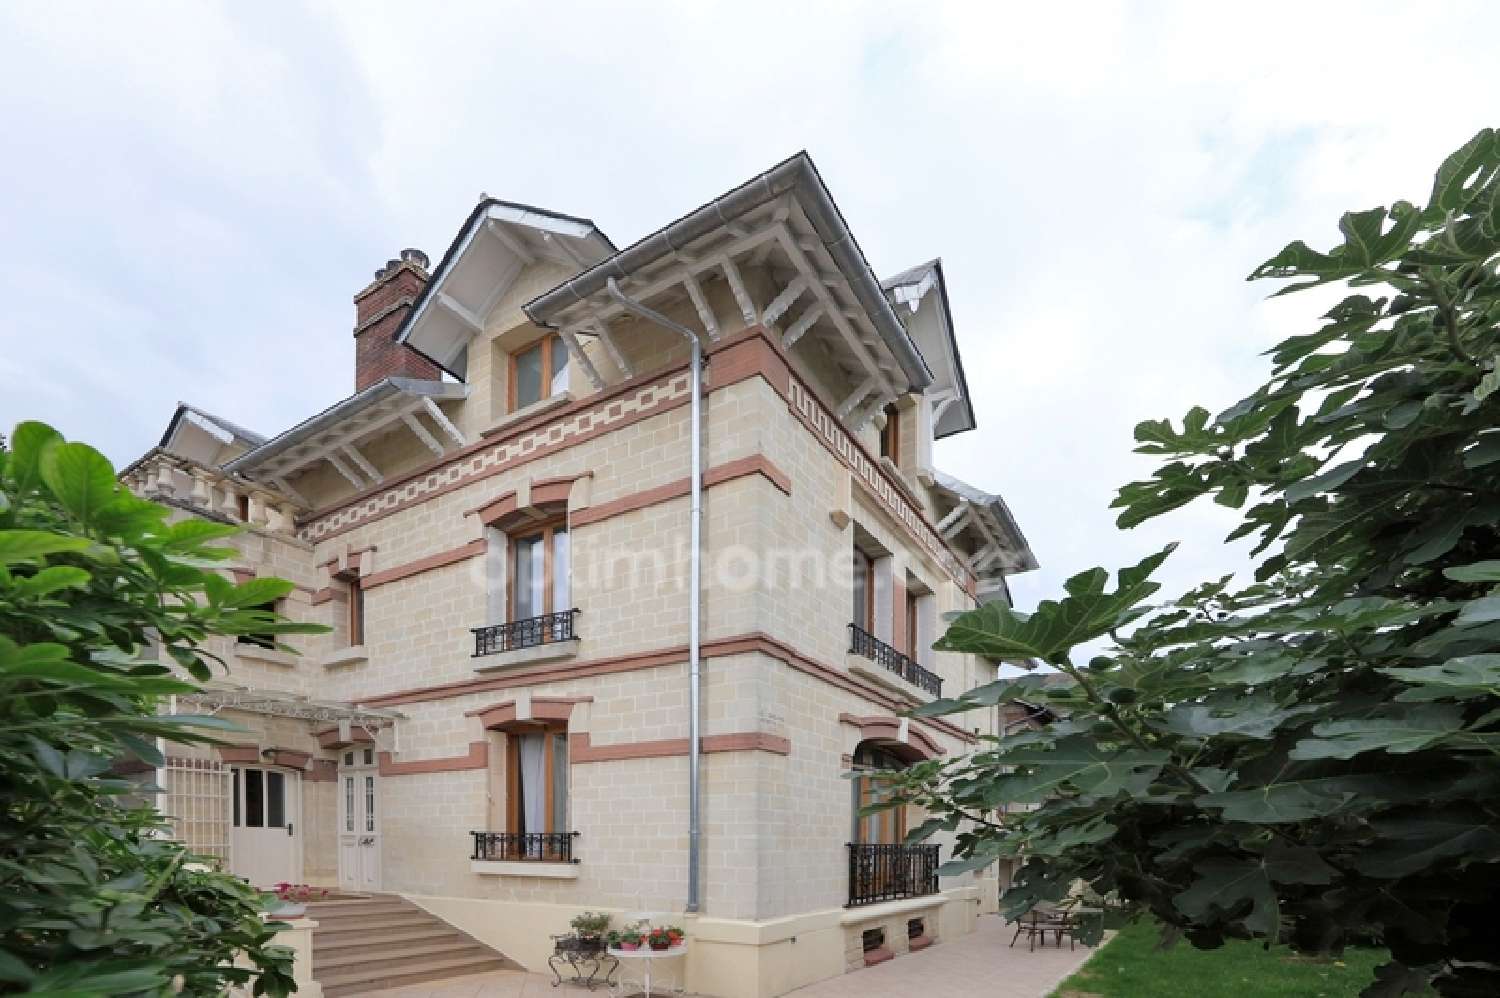  à vendre maison bourgeoise Beaumont-sur-Oise Val-d'Oise 4